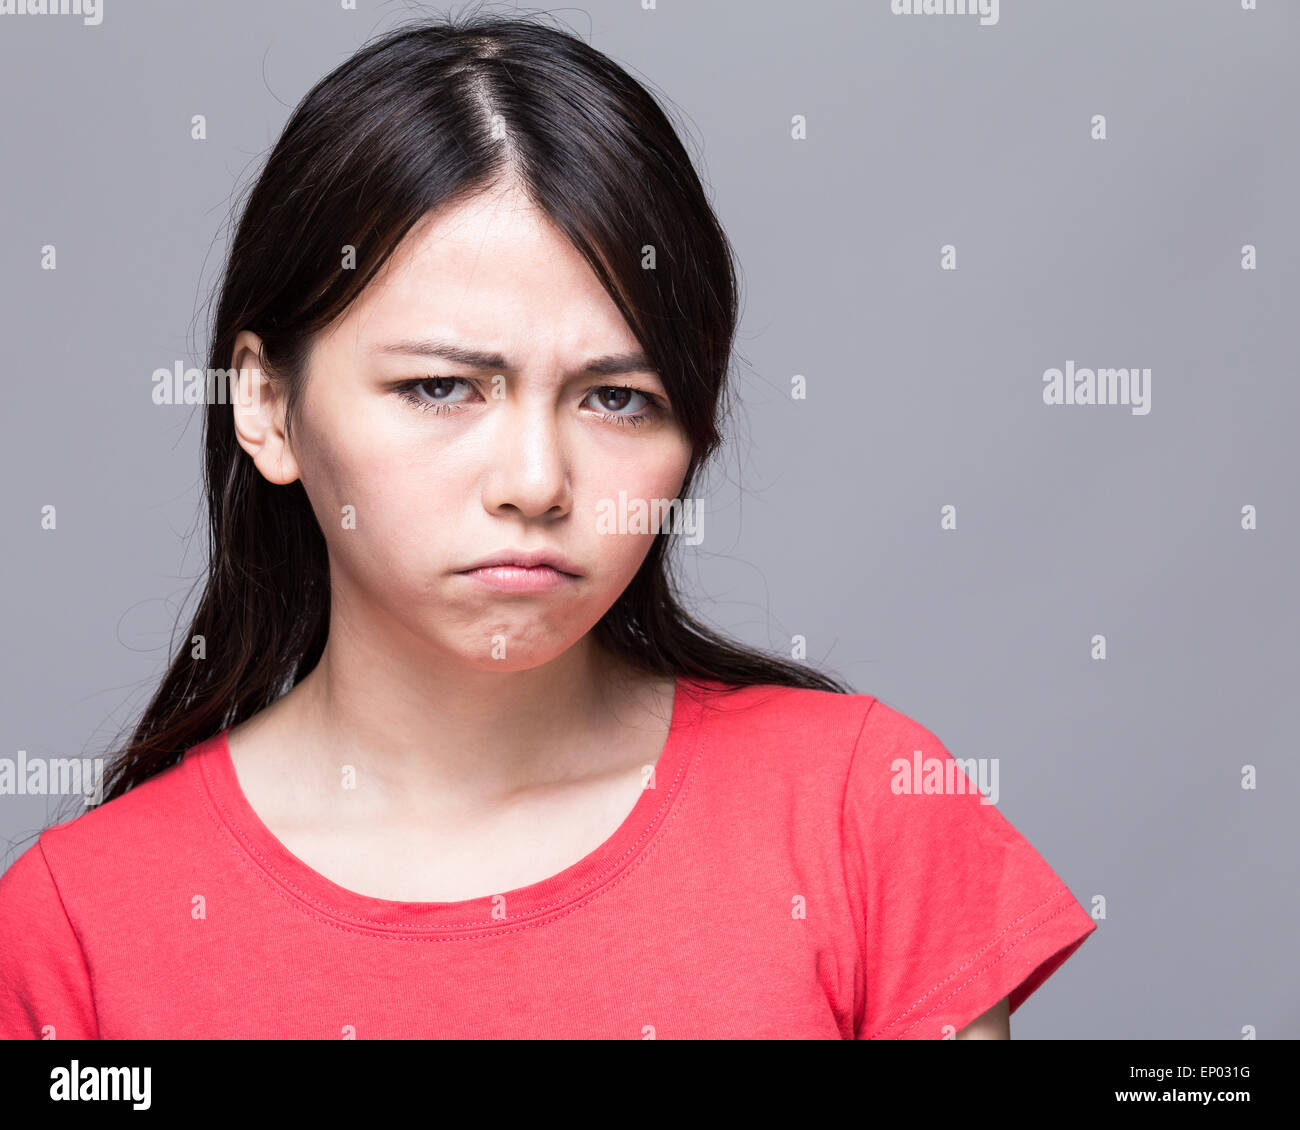 Upset Chinese woman scowling Stock Photo